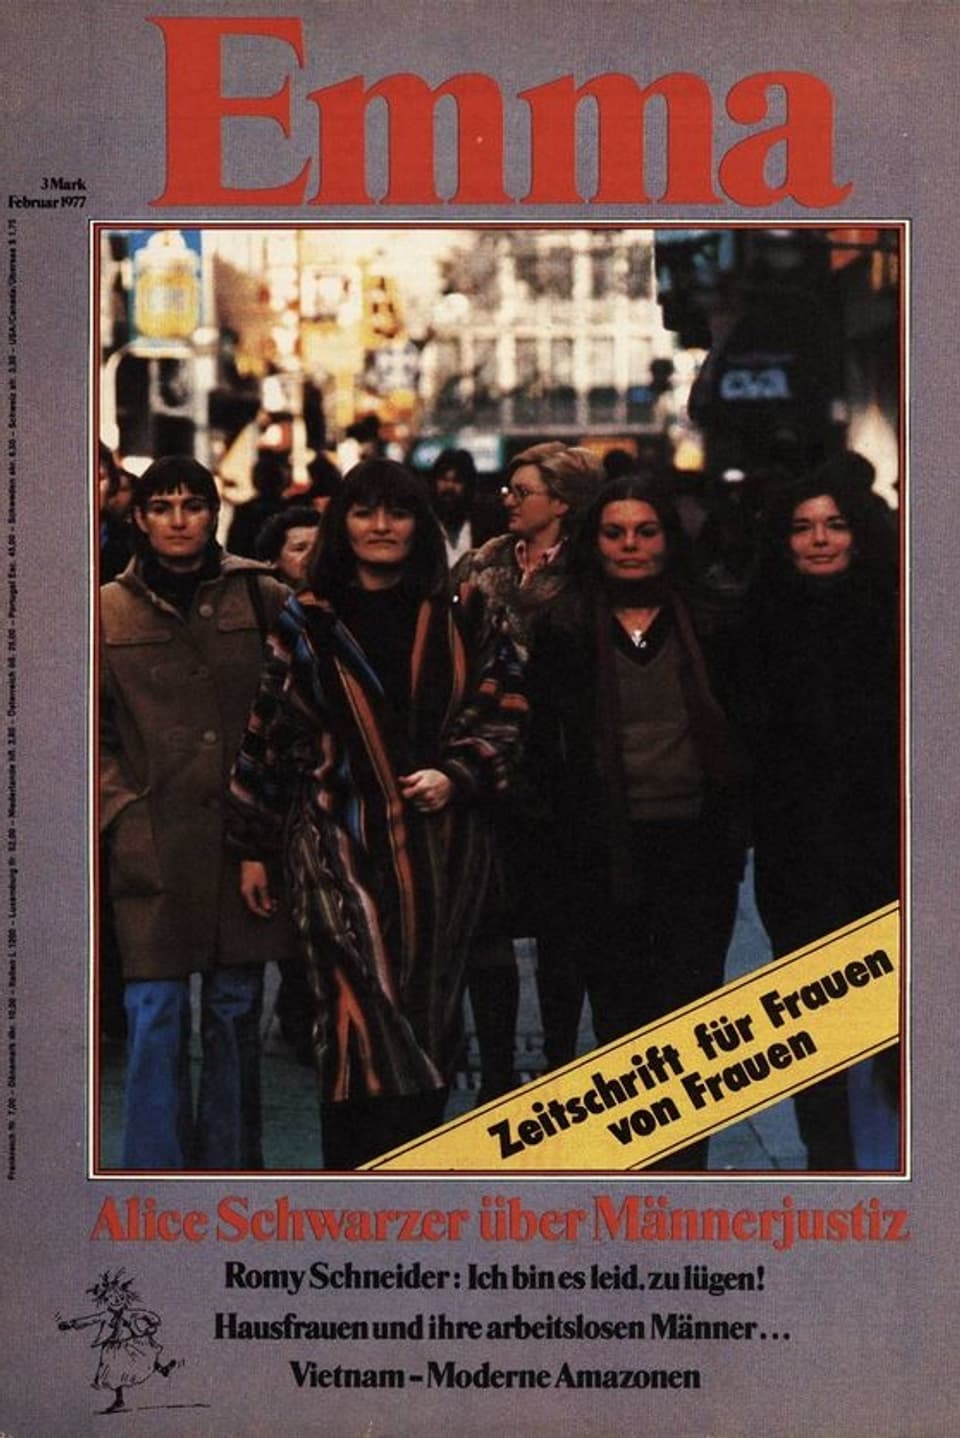 Das Cover der ersten Emma-Ausgabe: Eine Gruppe Frauen auf einem Bild. 